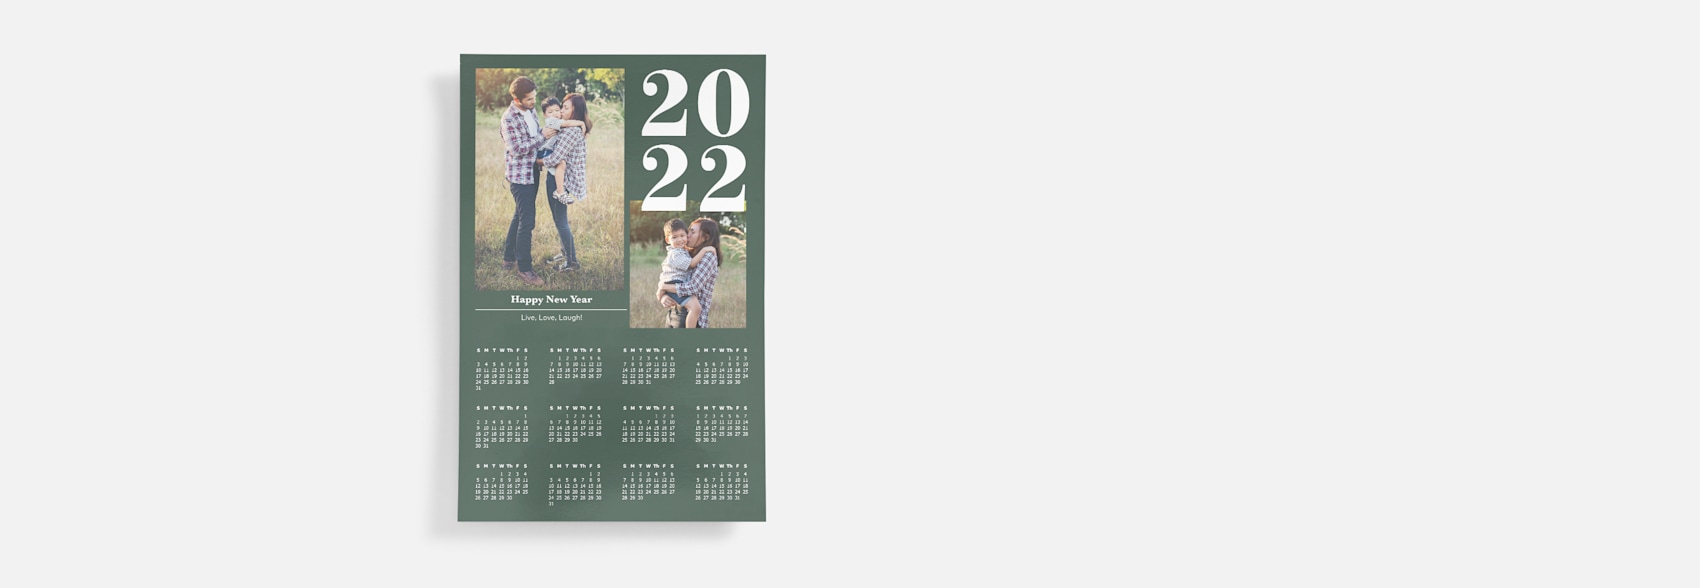 poster calendar with family photos